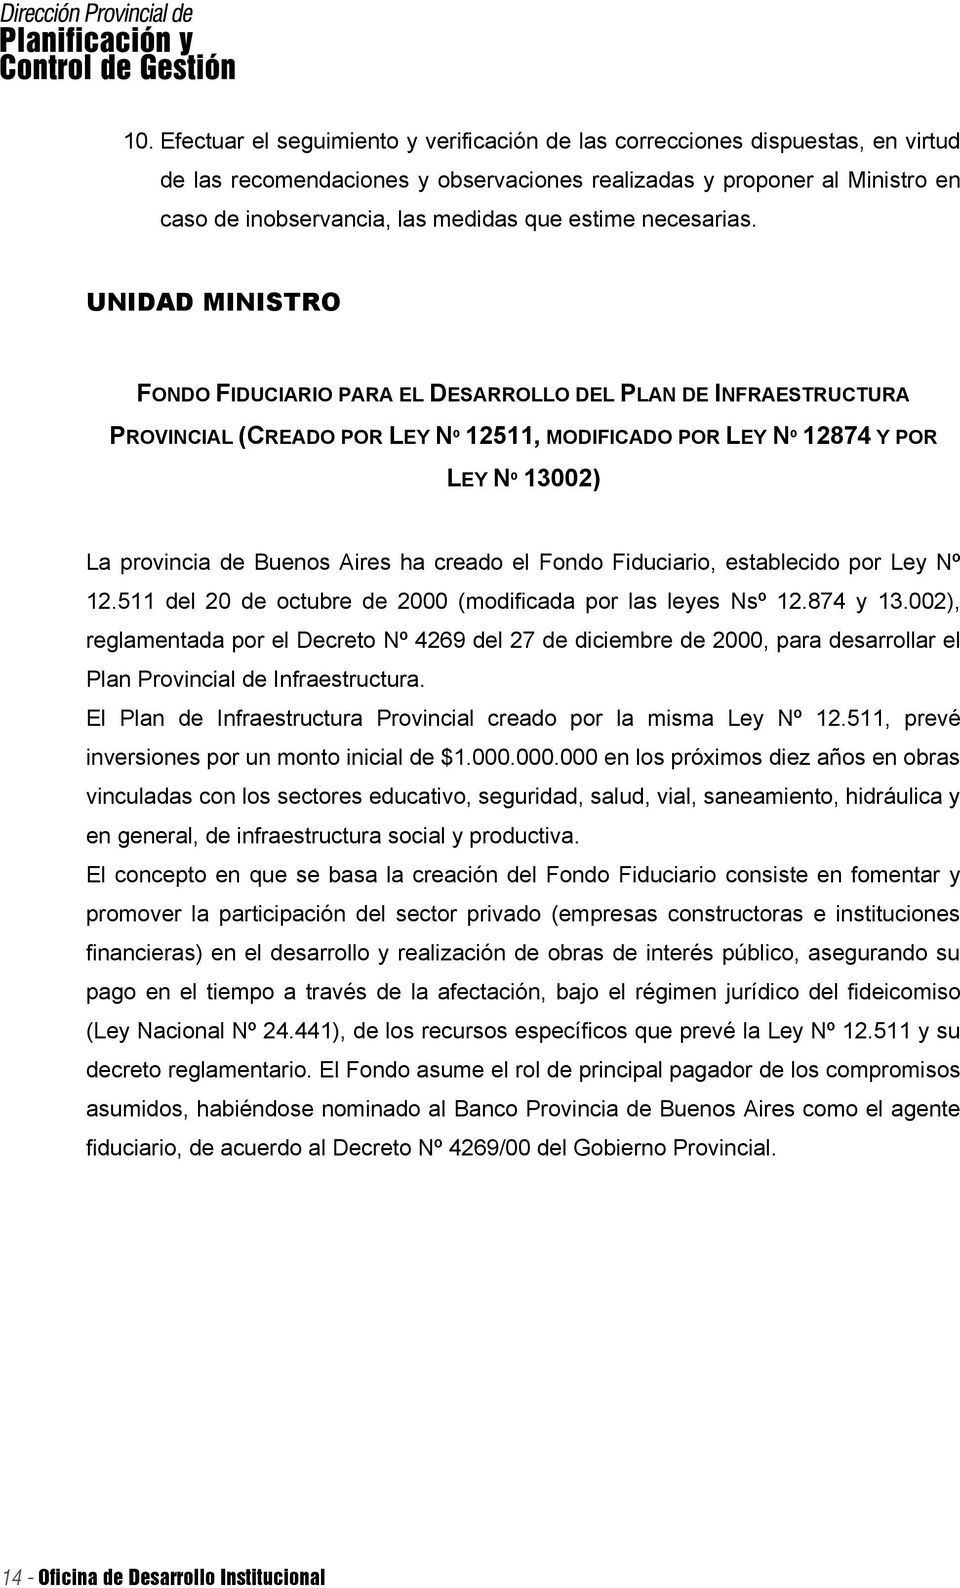 UNIDAD MINISTRO FONDO FIDUCIARIO PARA EL DESARROLLO DEL PLAN DE INFRAESTRUCTURA PROVINCIAL (CREADO POR LEY Nº 12511, MODIFICADO POR LEY Nº 12874 Y POR LEY Nº 13002) La provincia de Buenos Aires ha